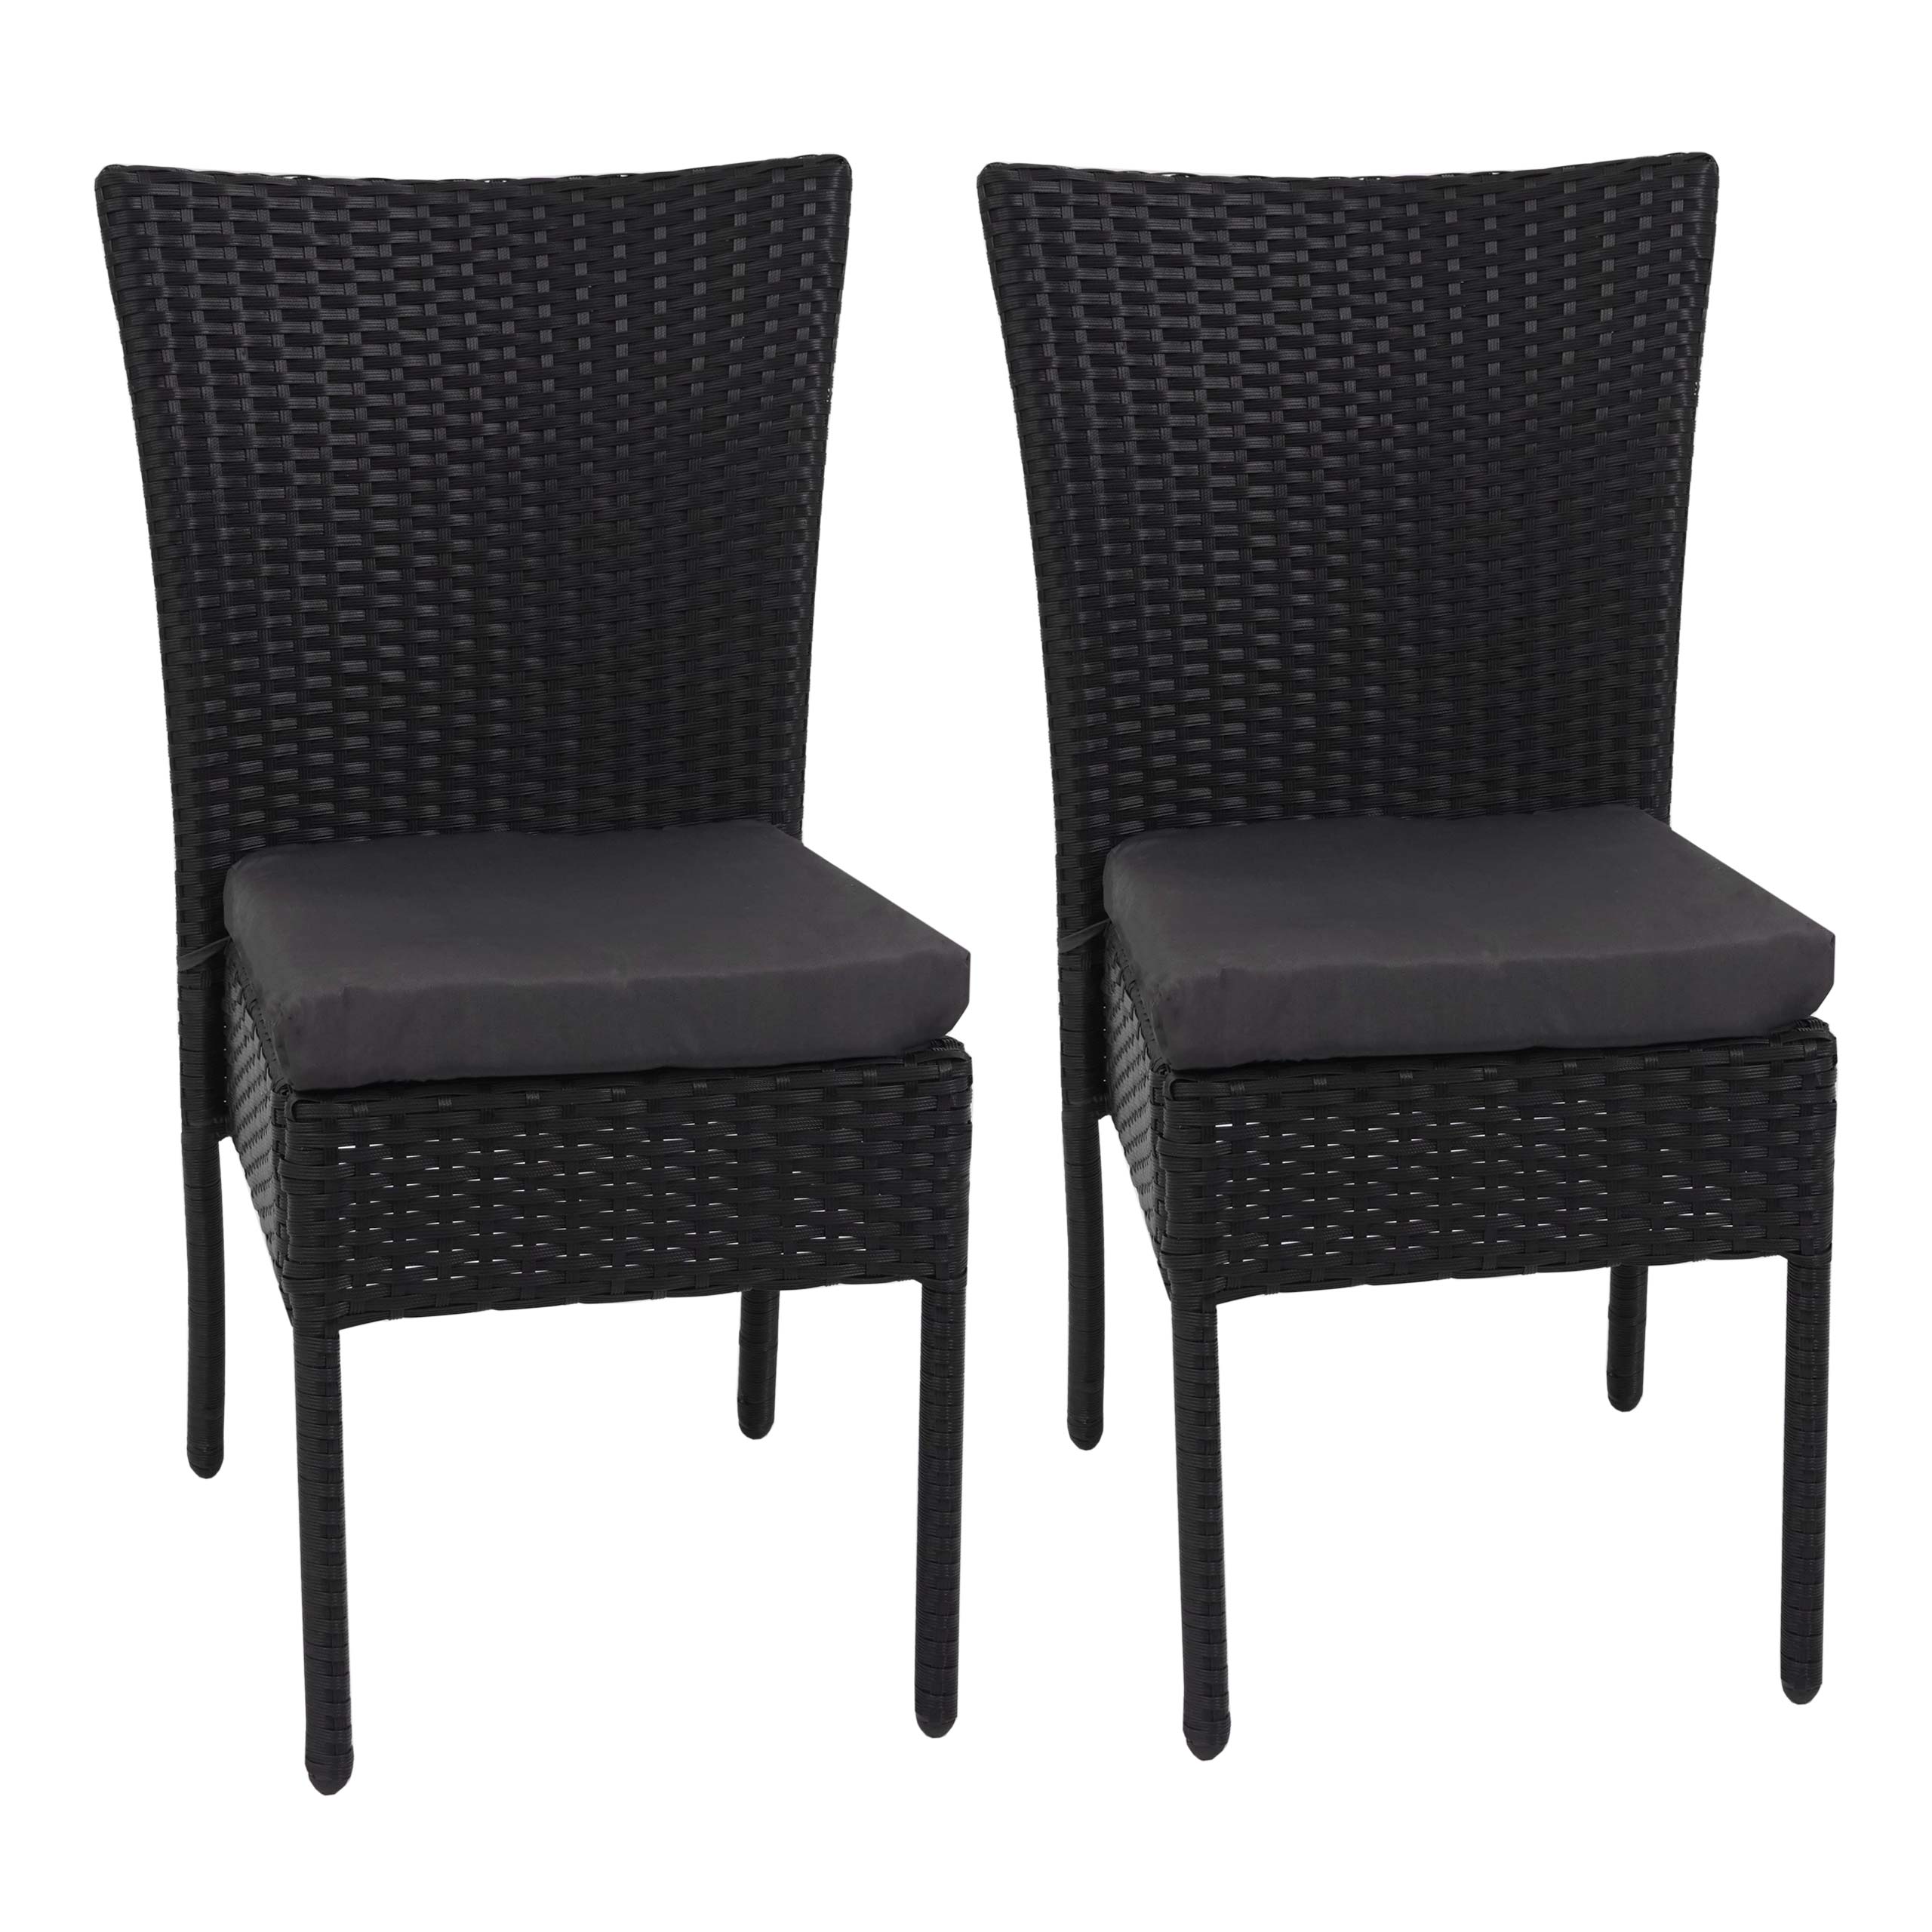 2x Poly-Rattan Sessel MCW-E22,Gartenstuhl verstellbar schwarz,Kissen dunkelgrau 